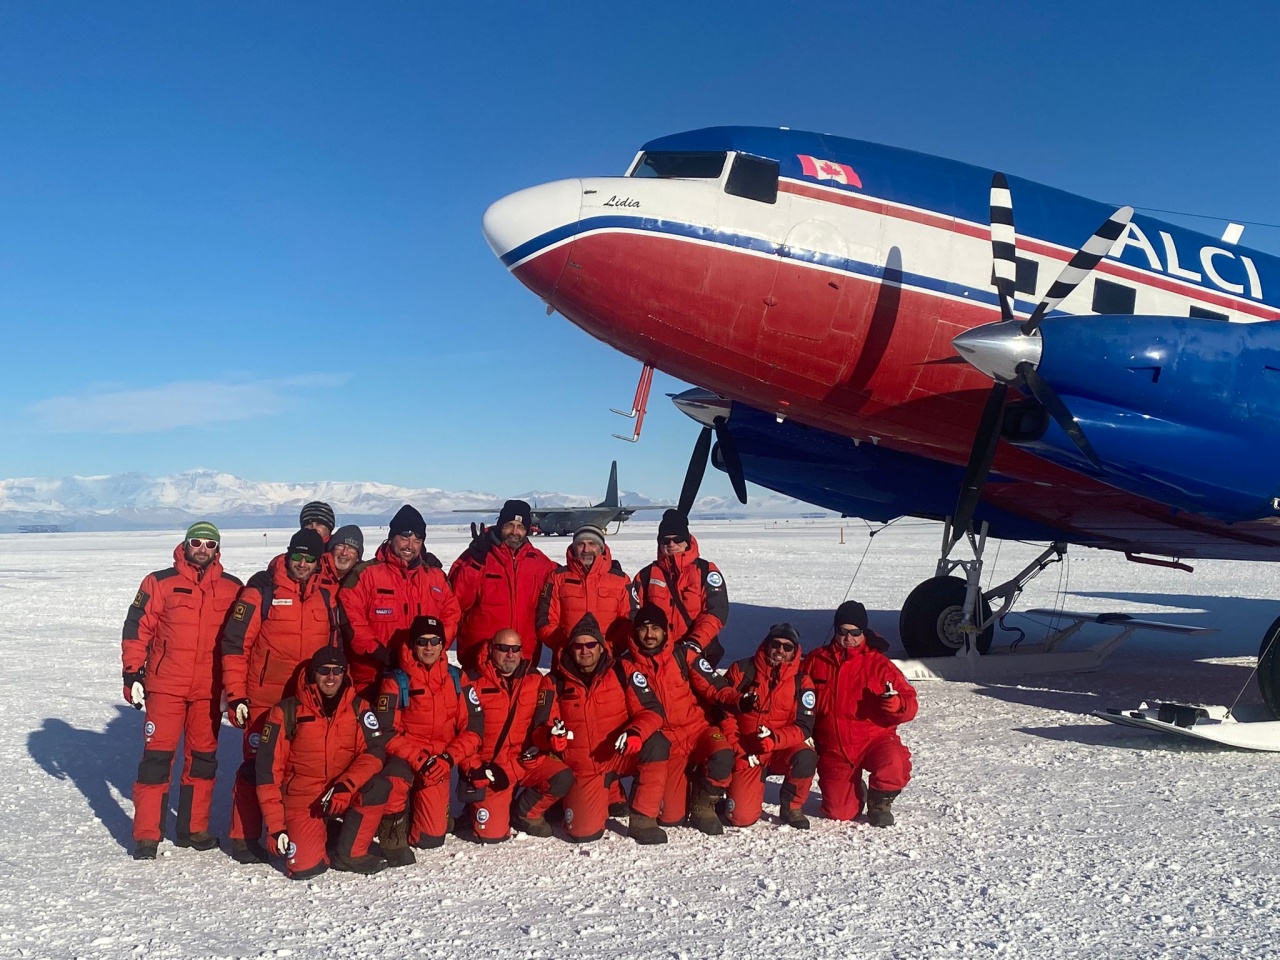 Antartide: al via la 38a Spedizione italiana che coinvolge 240 ricercatori e 50 progetti 